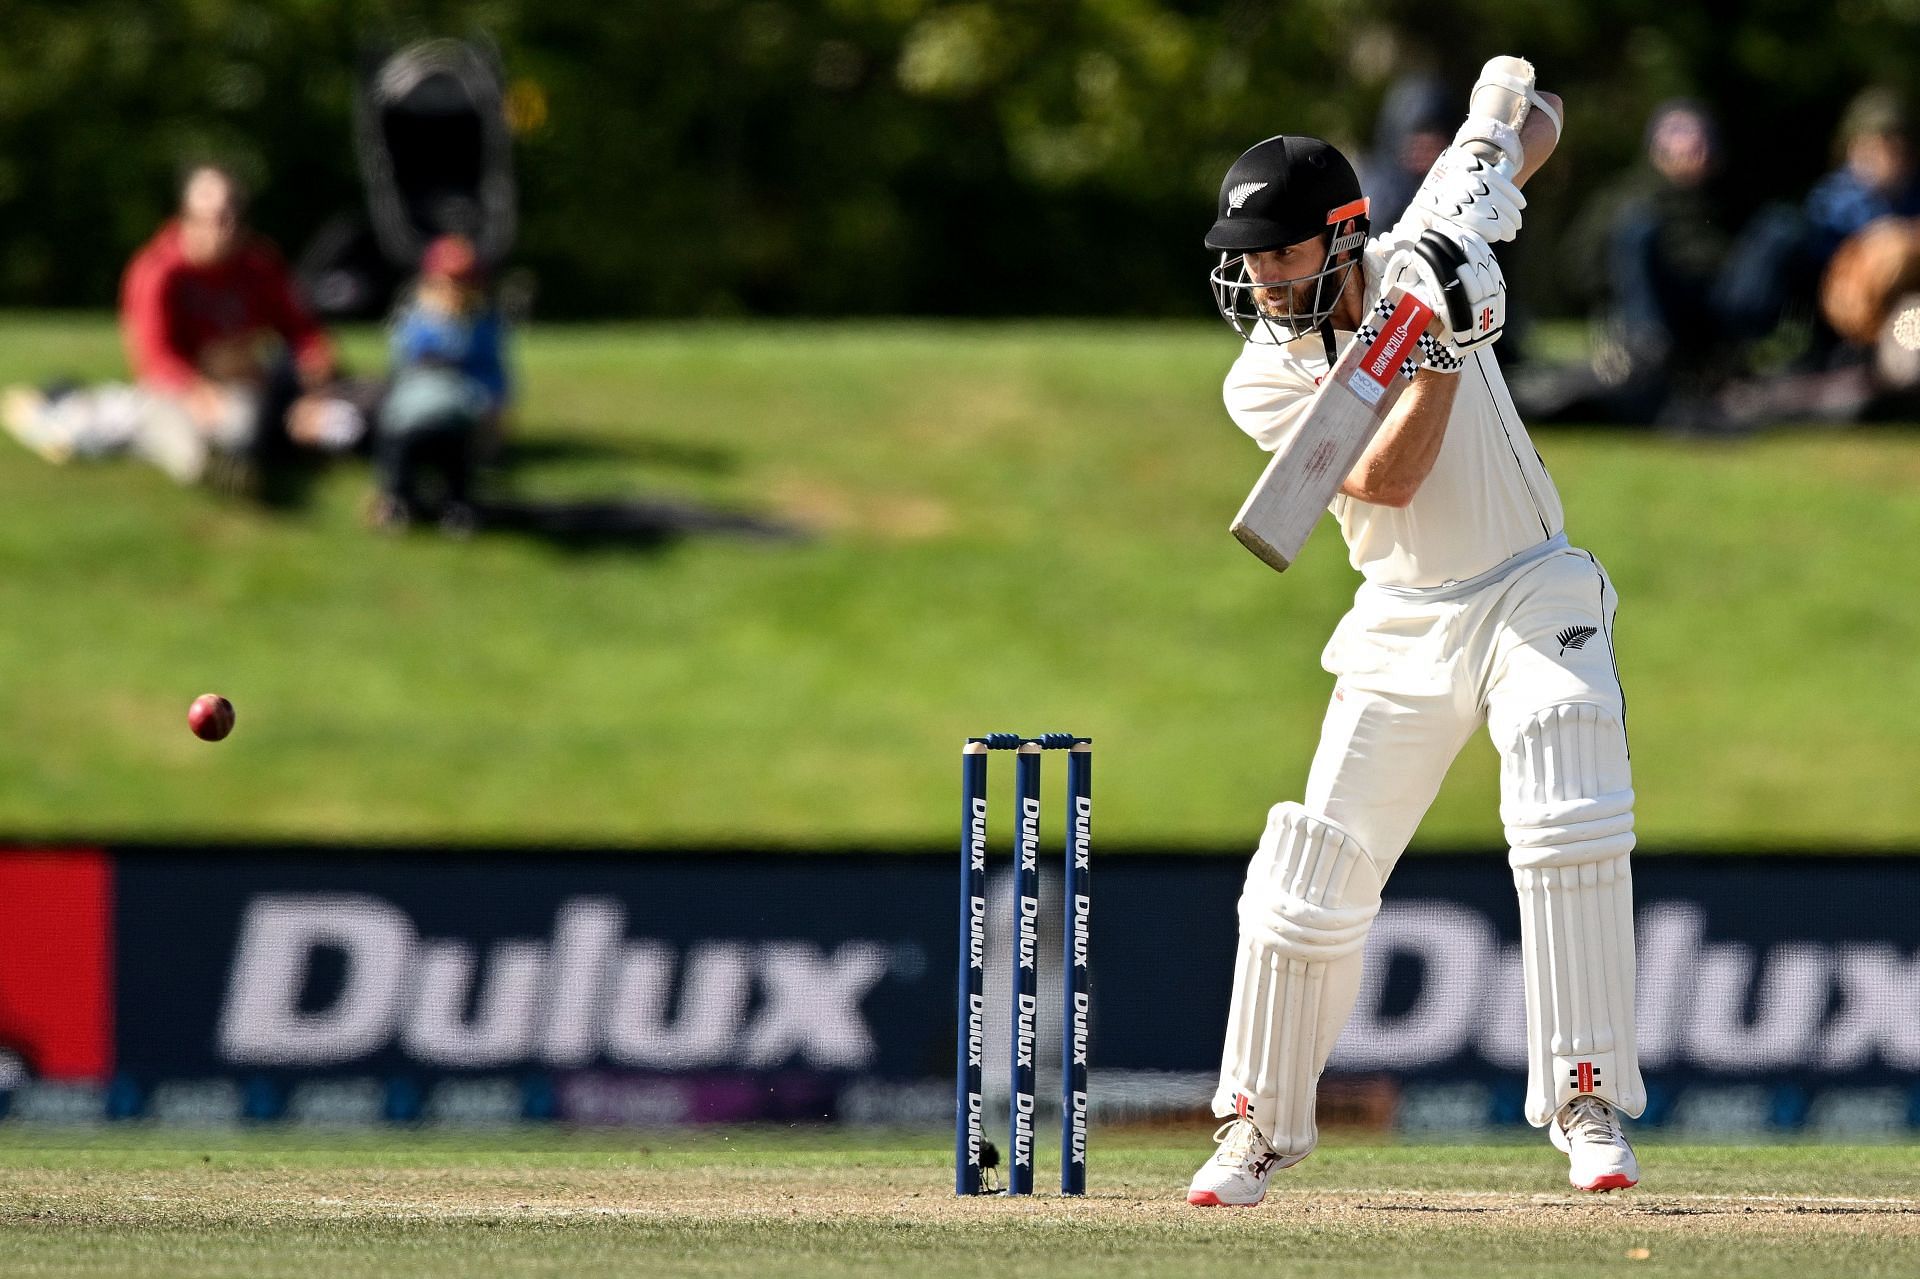 New Zealand v Sri Lanka - 1st Test: Day 5